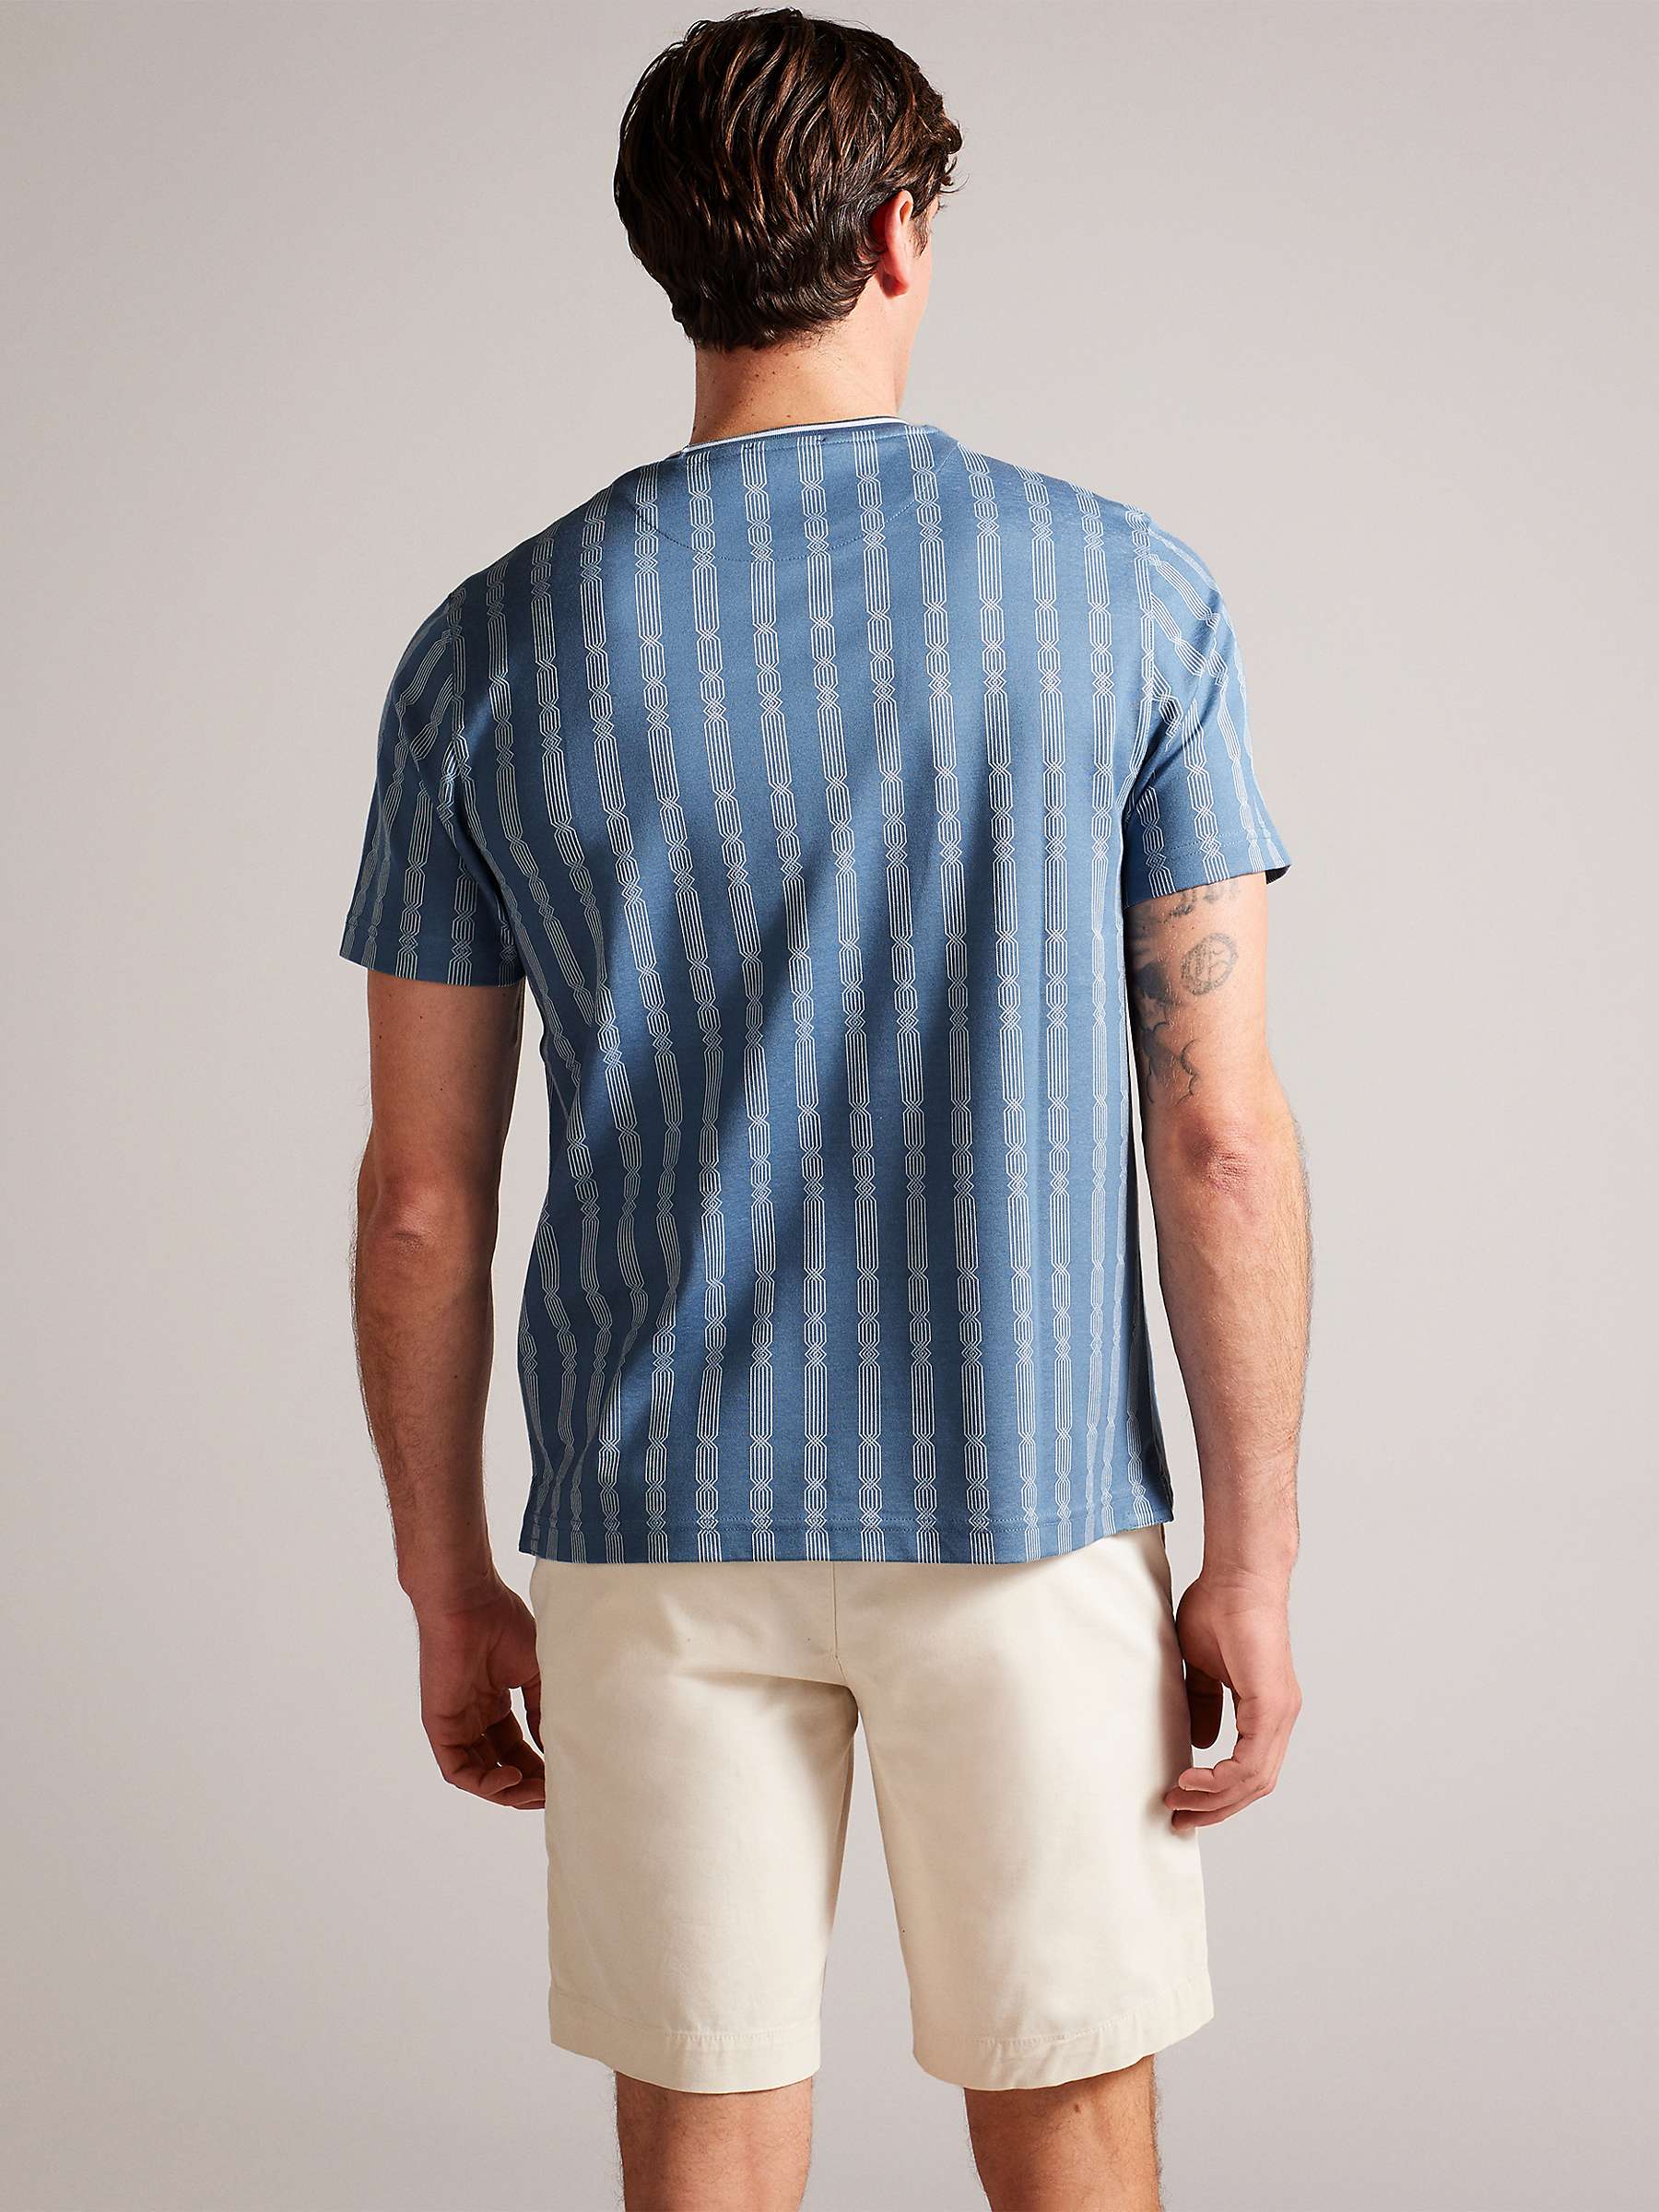 Buy Ted Baker Estat Short Sleeve Regular Cable Jacquard T-Shirt, Blue Online at johnlewis.com